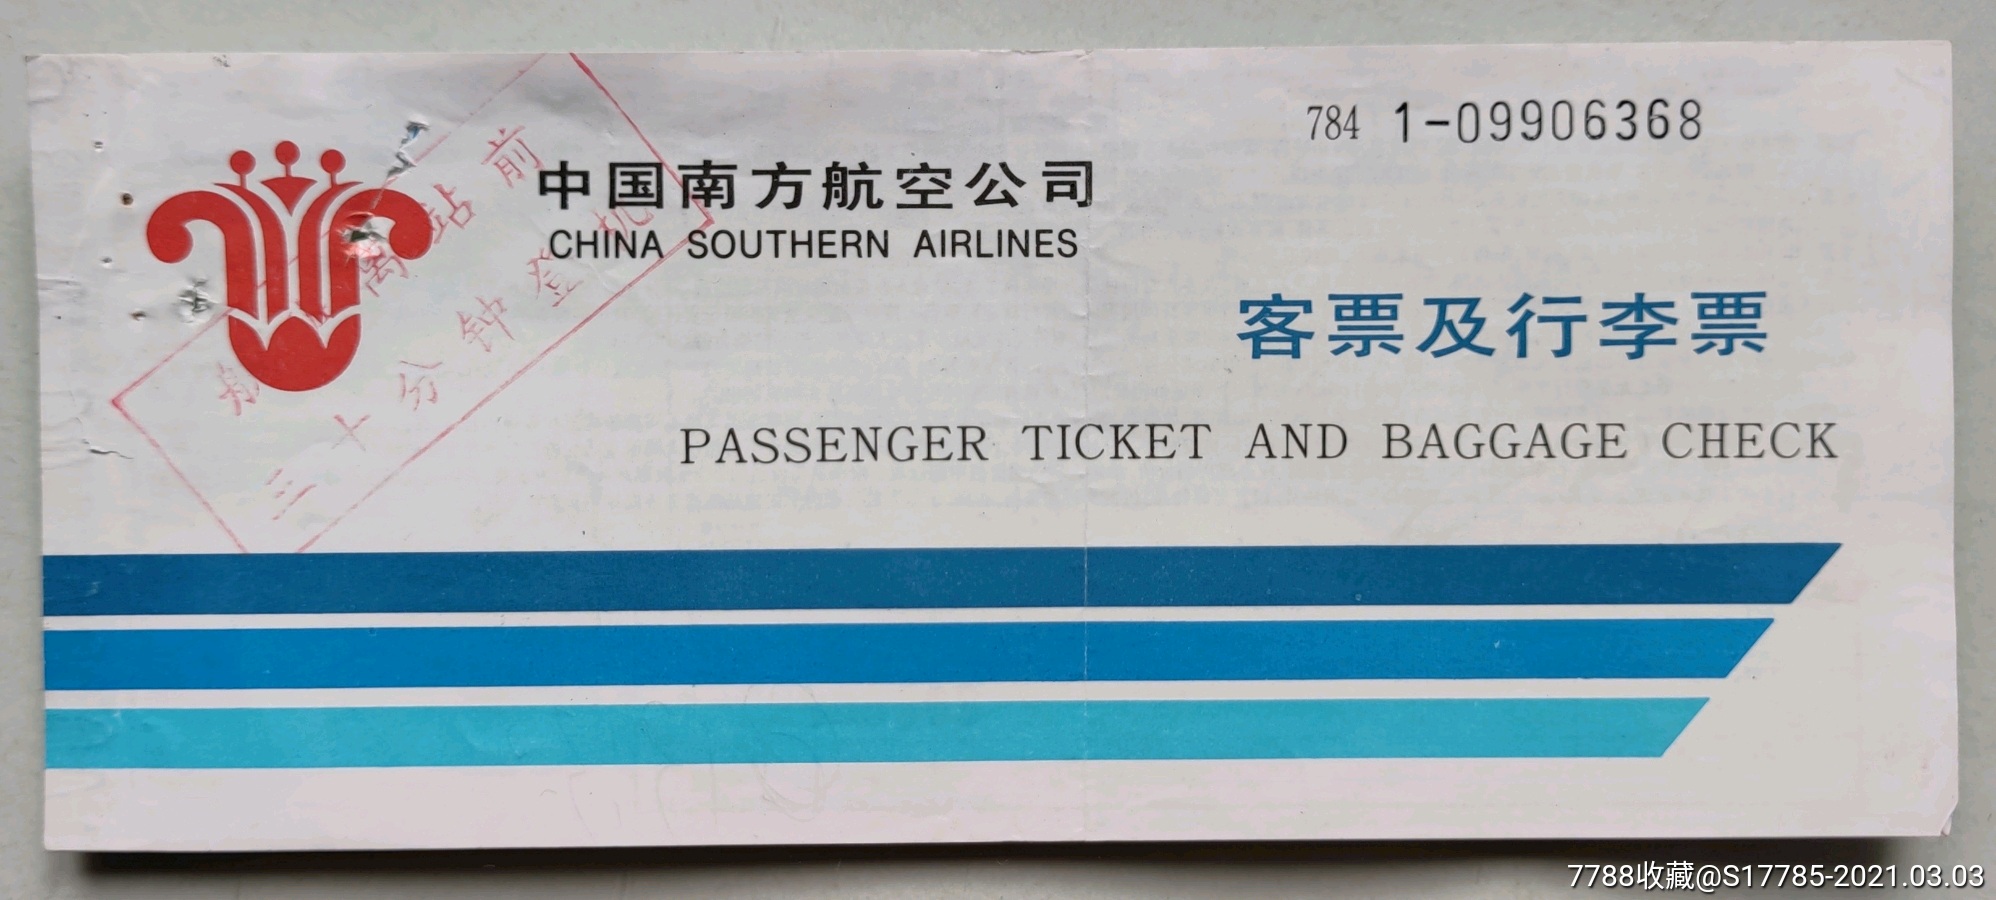 飞机票:中国南方航空公司(含旅客联)【784】